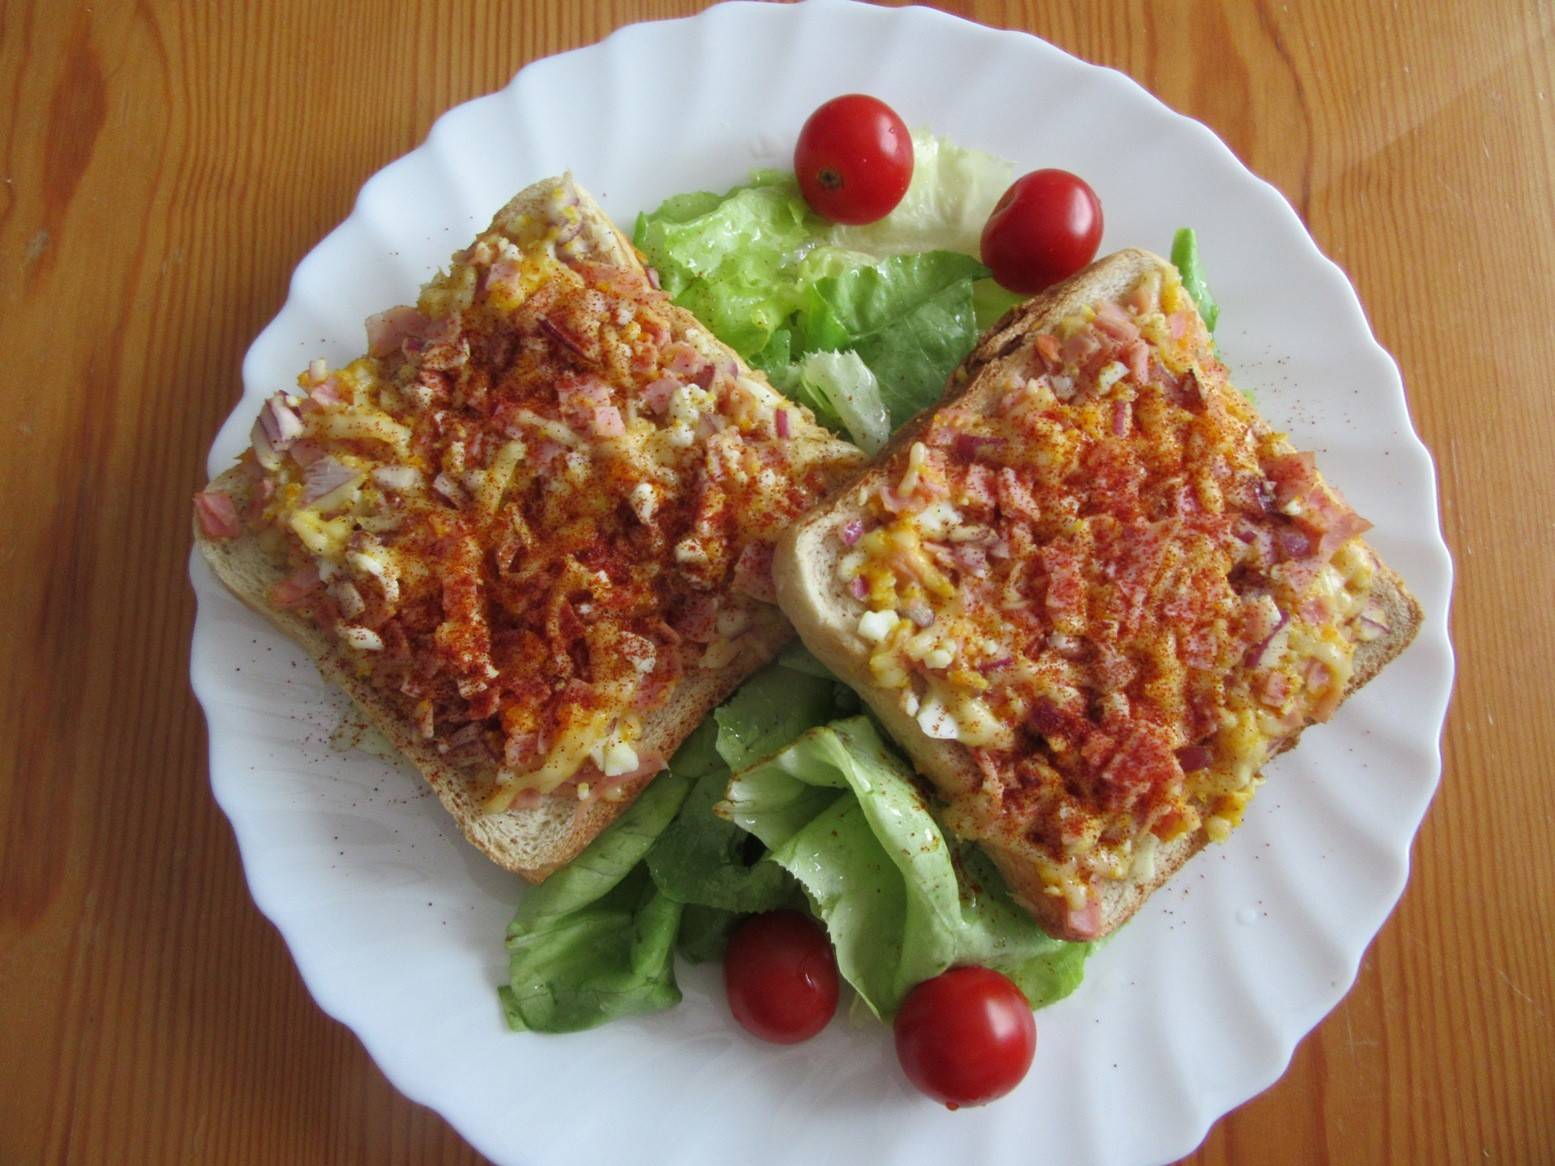 Toasts mit Schinken, Käse und Ei auf Blattsalat